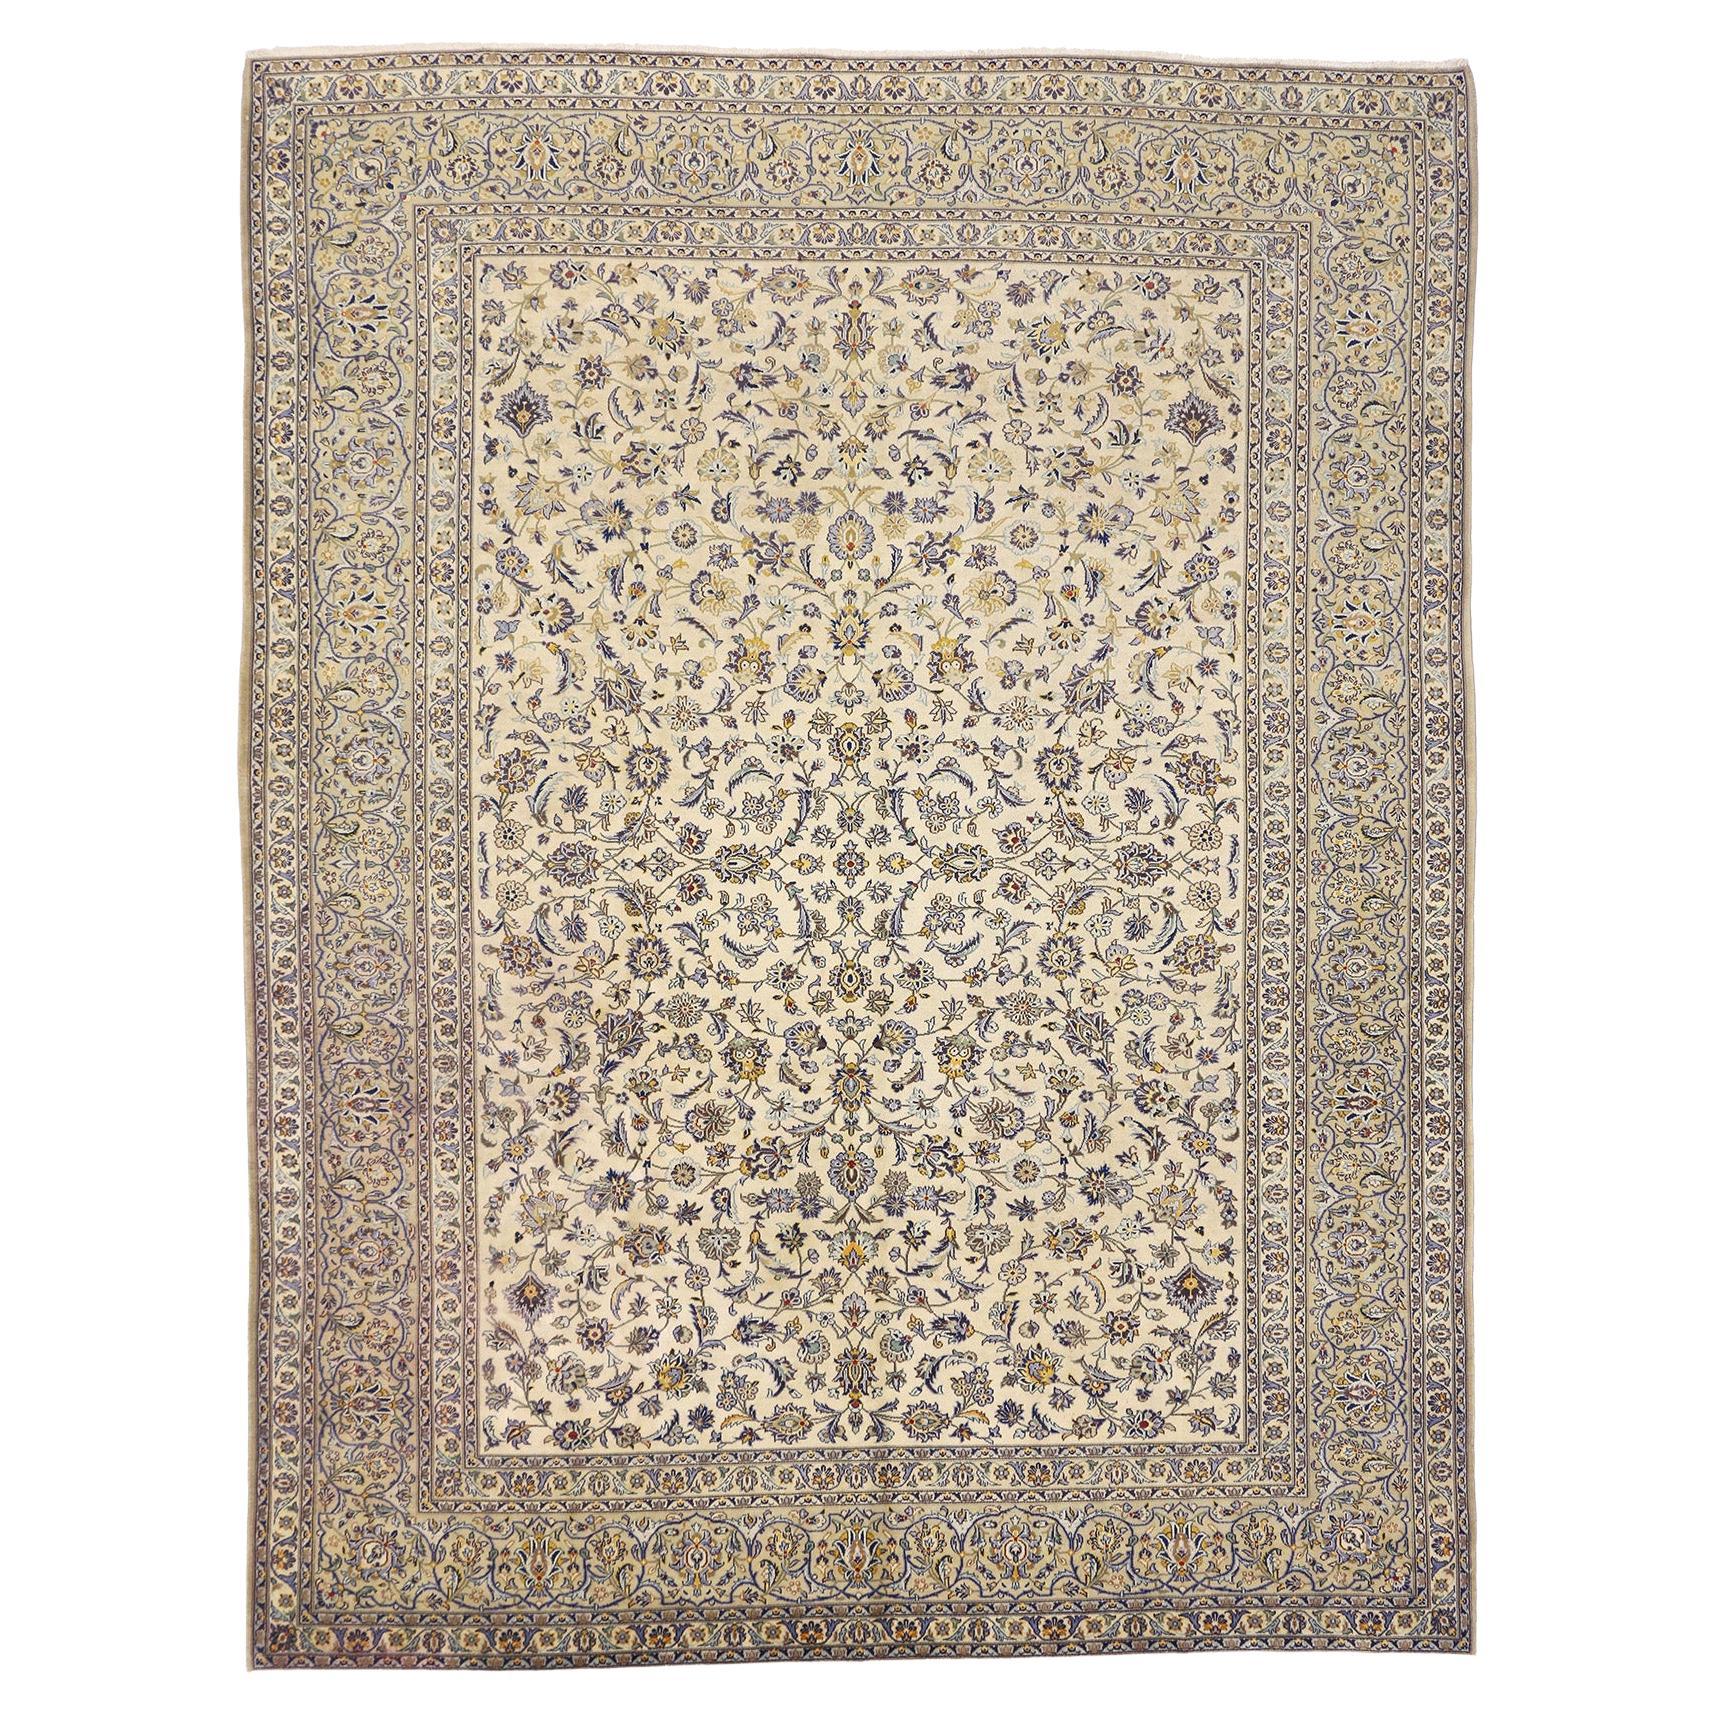 Vintage Persian Kashan Rug, Neoclassic Elegance Meets Timeless Appeal